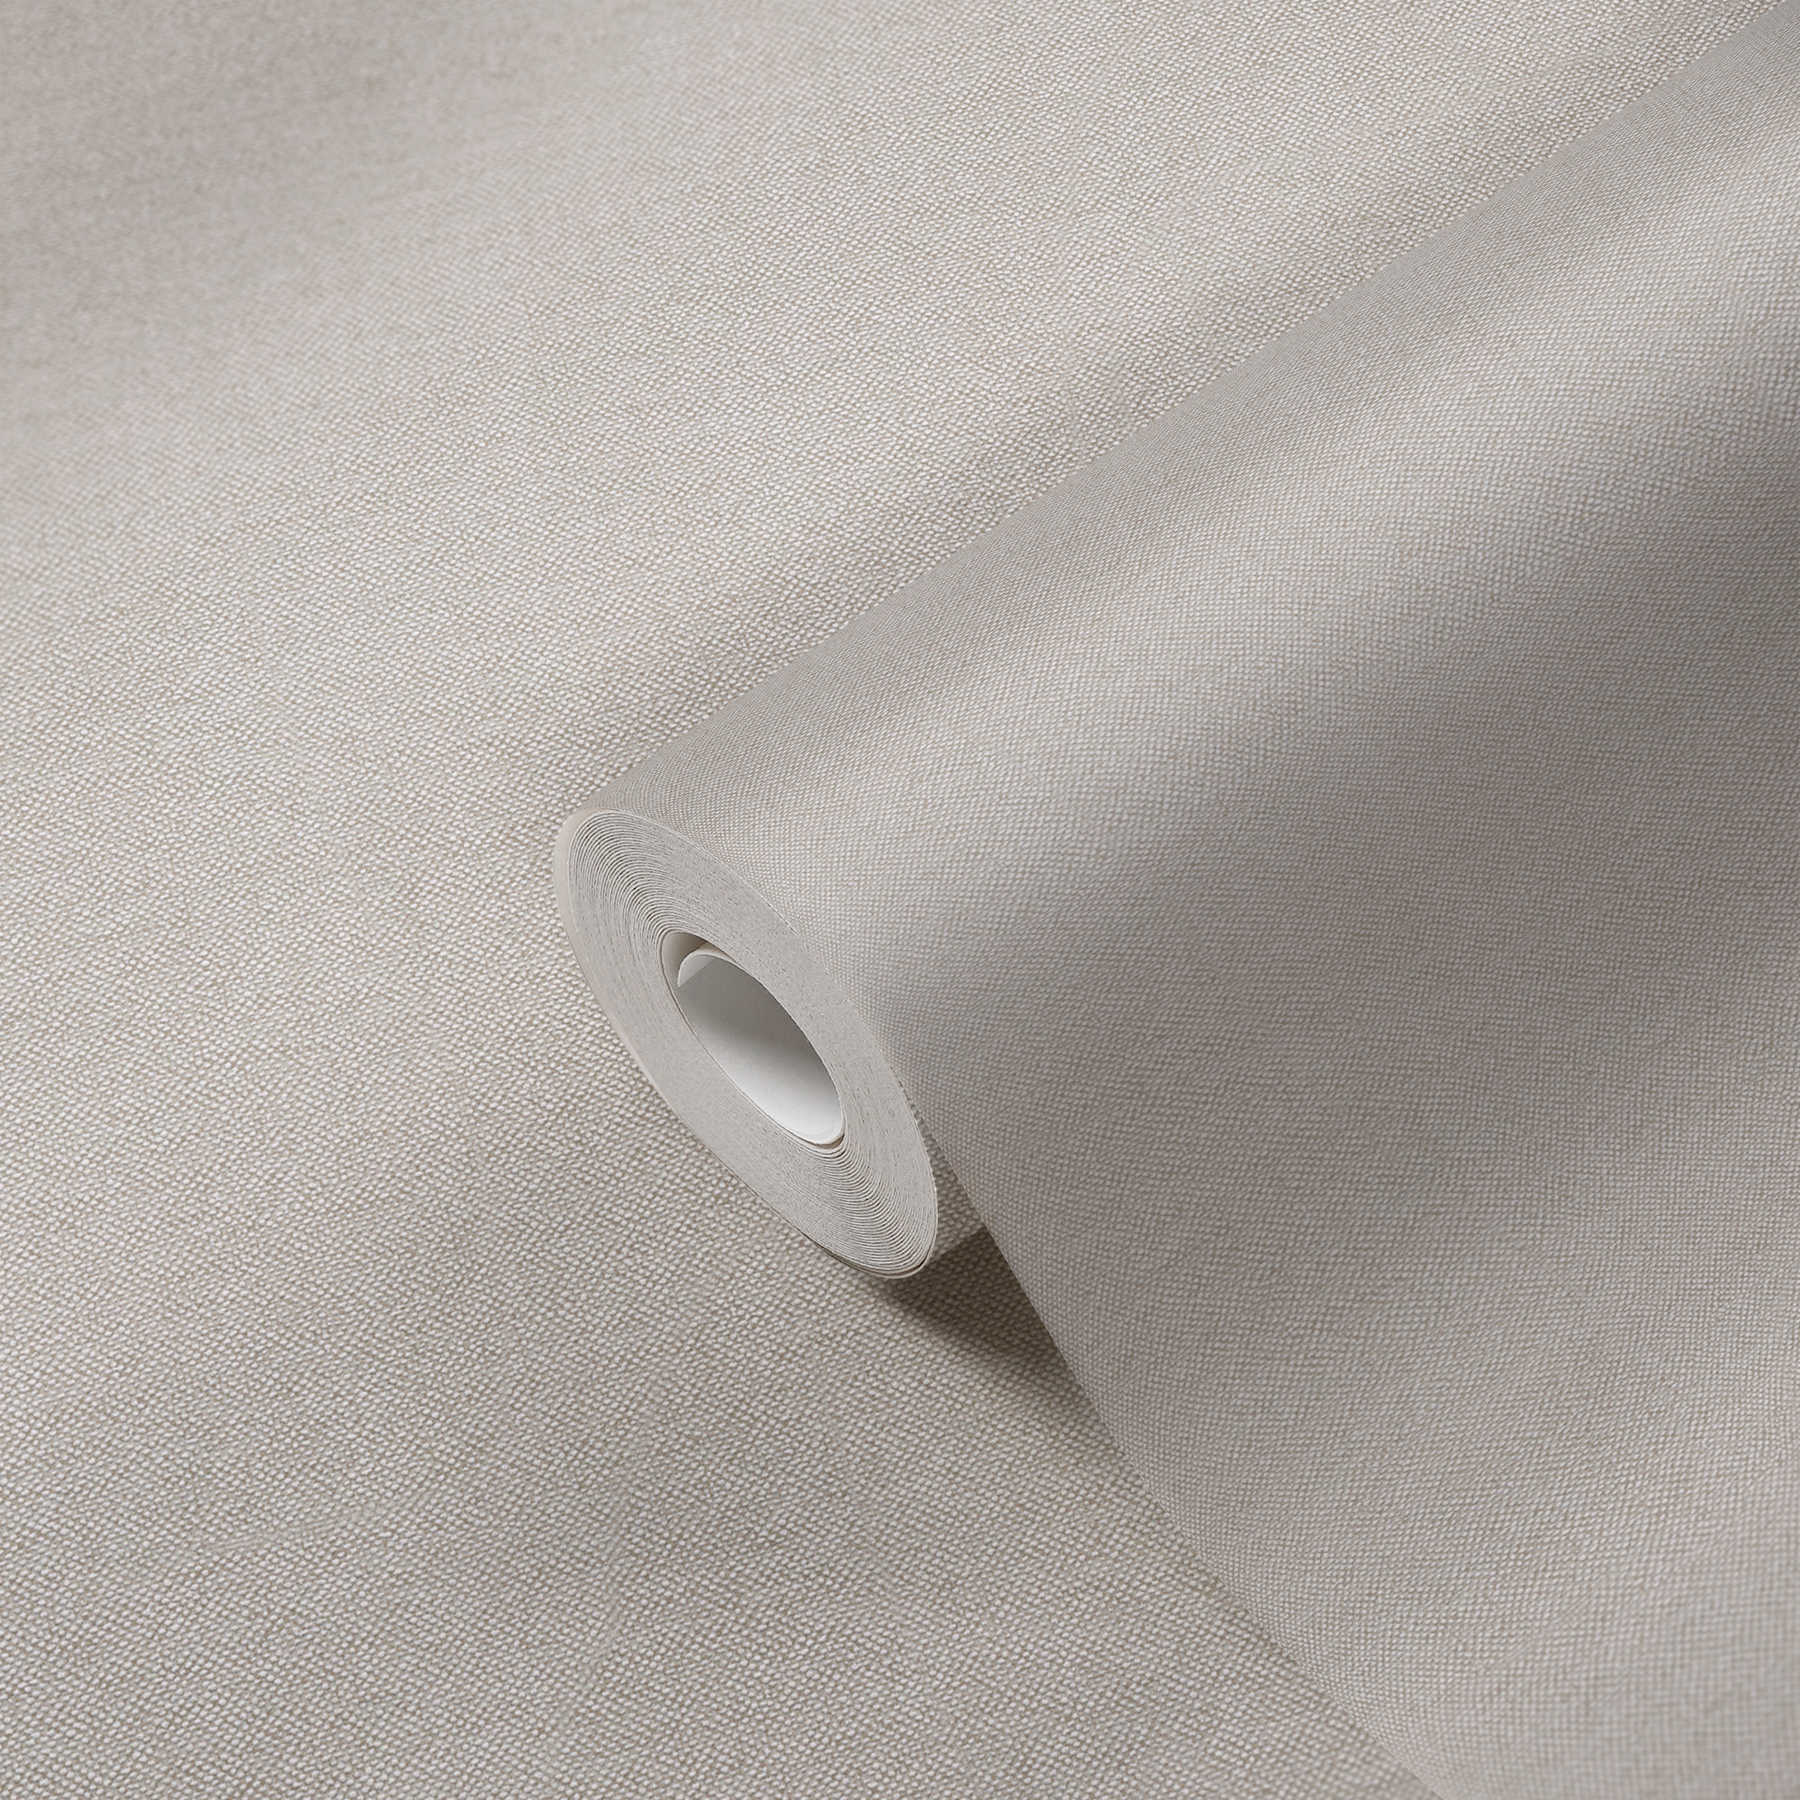             Papier peint uni avec structure textile au design élégant - beige, marron
        